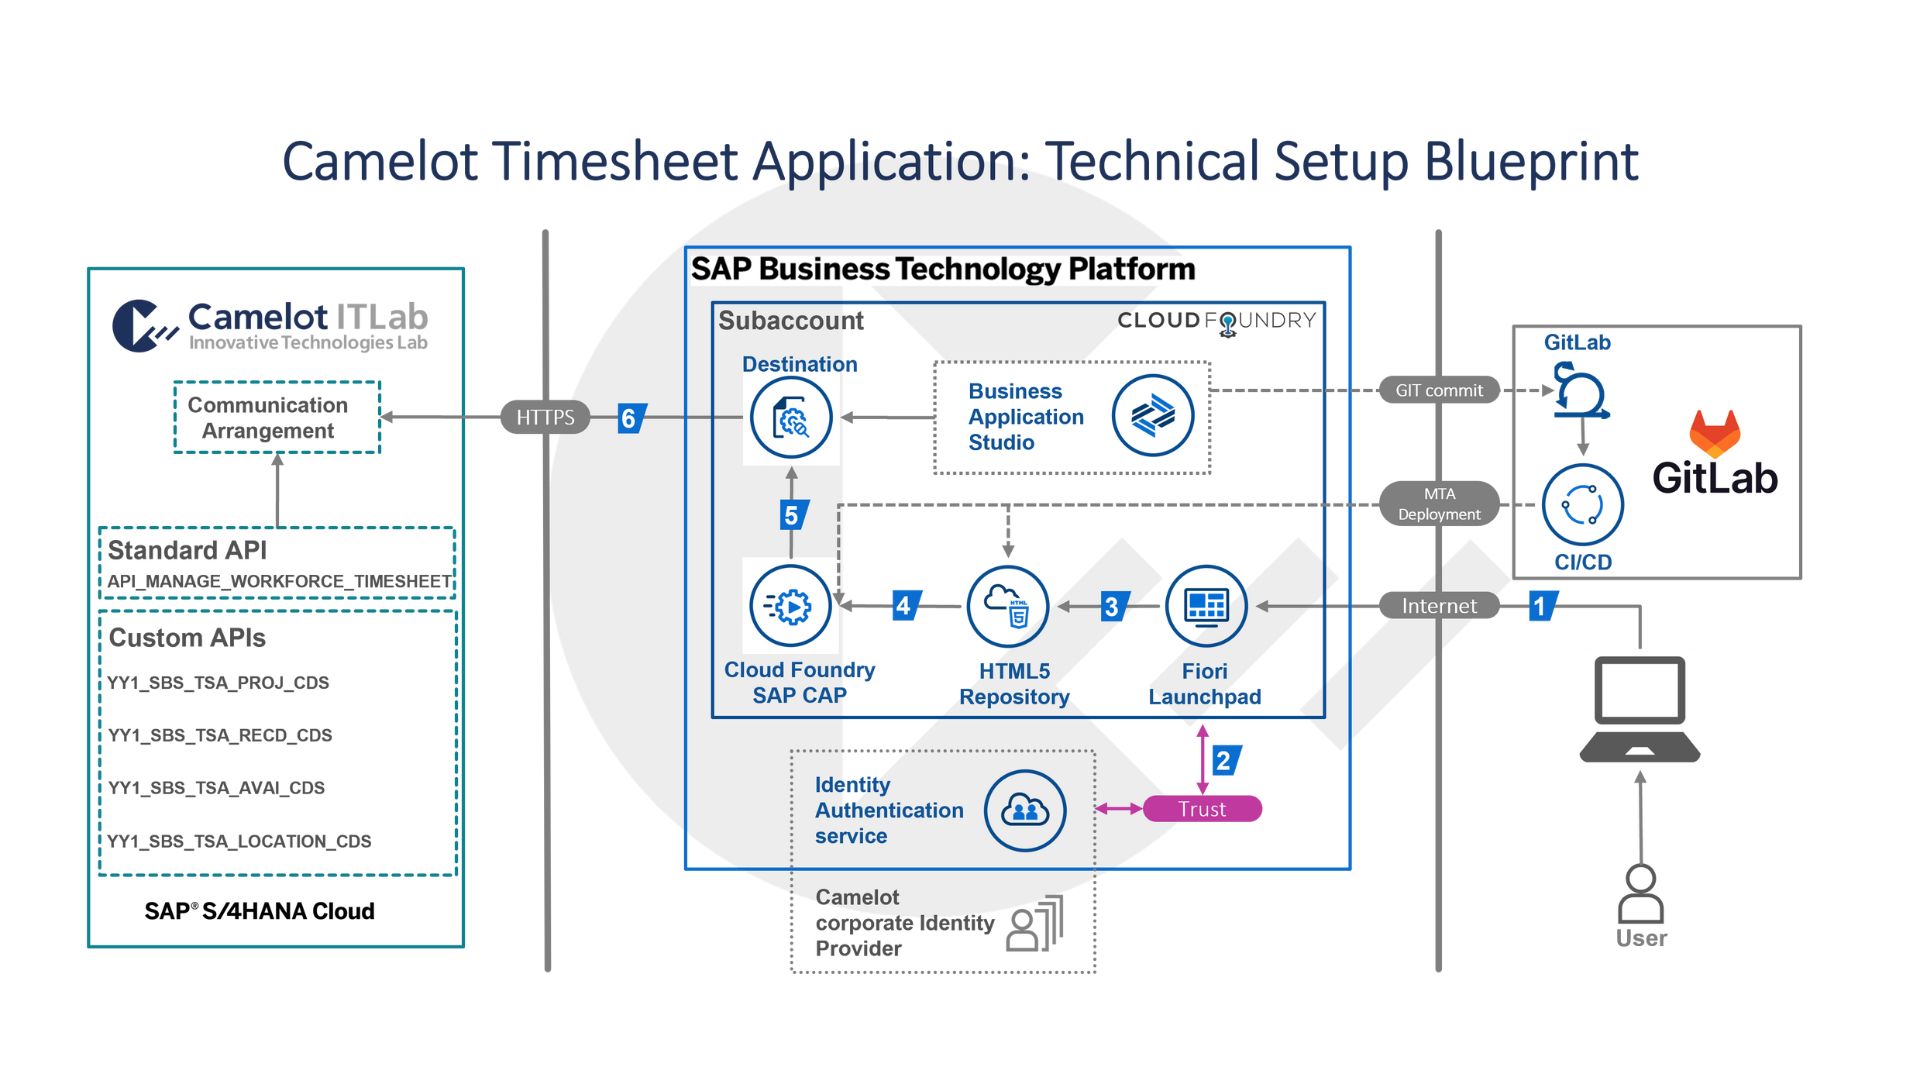 Technical Setup Blueprint of Camelot Timesheet Application 